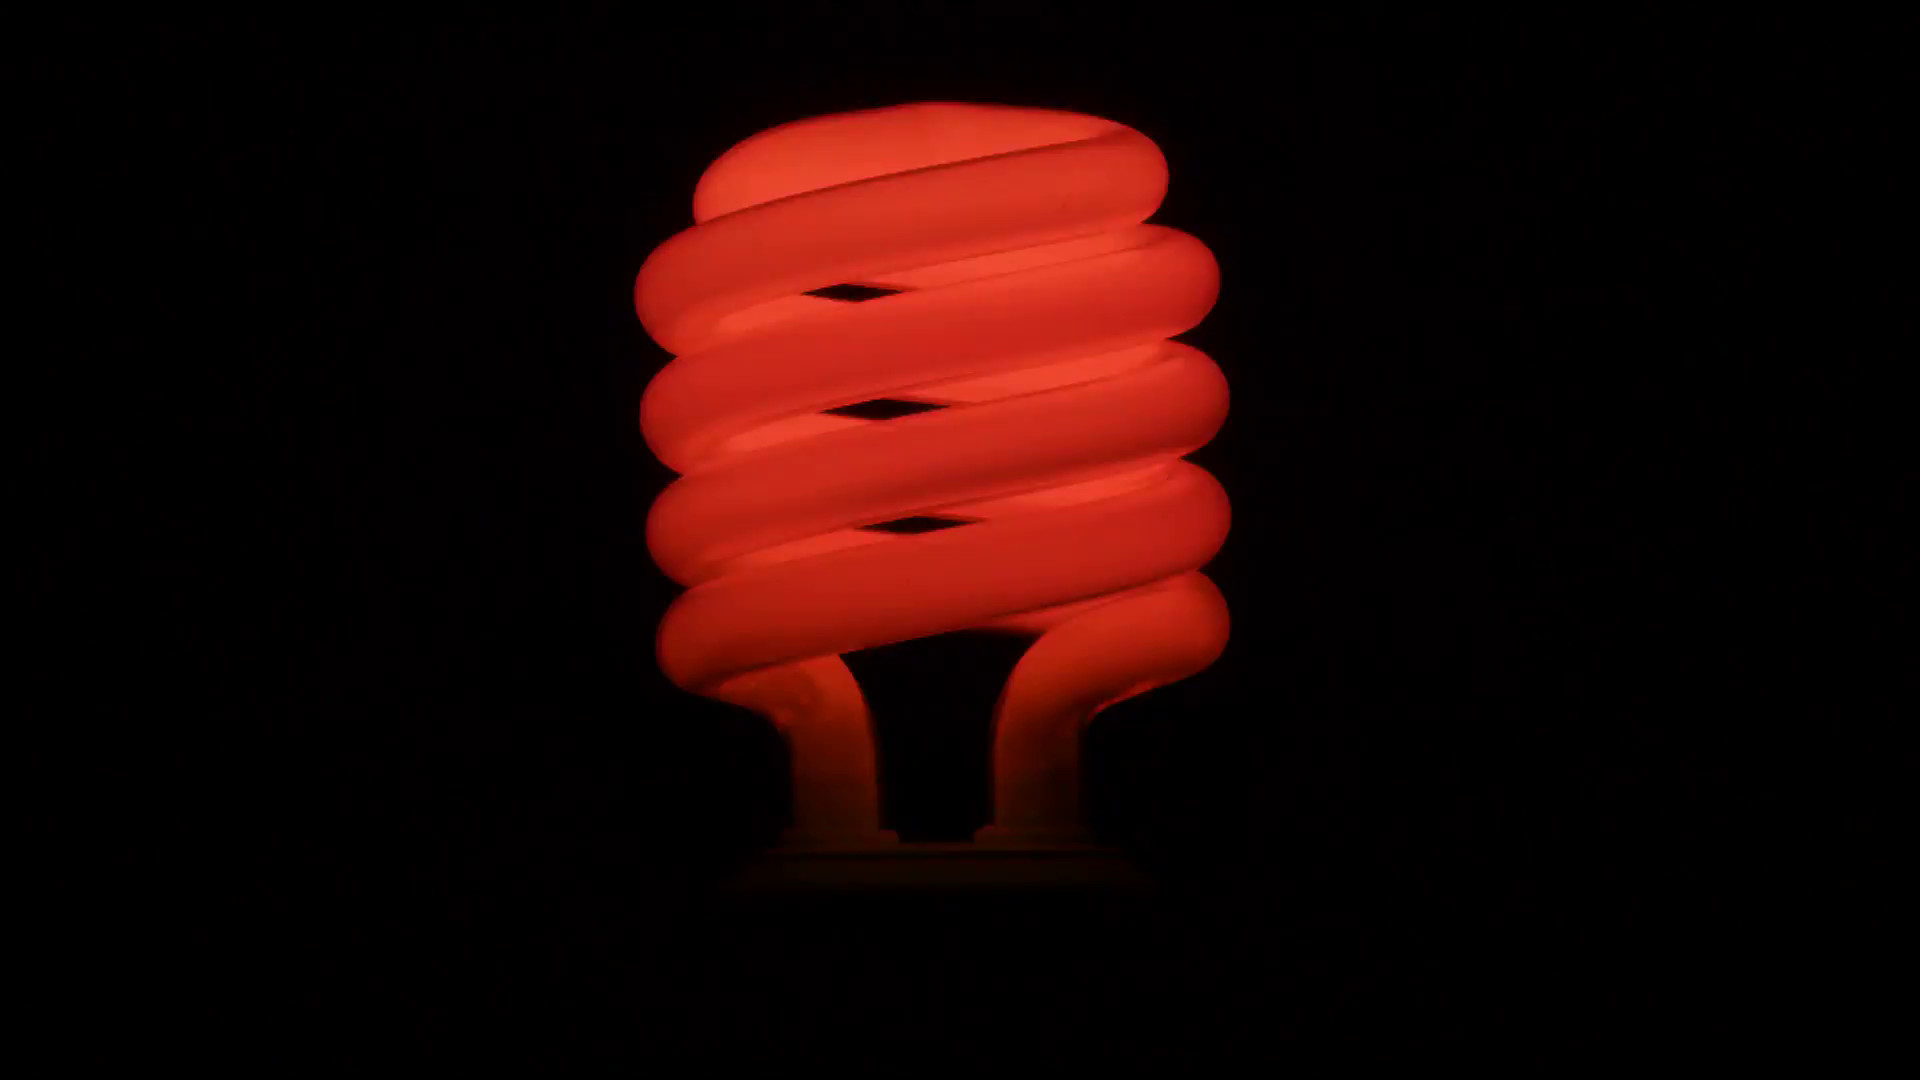 1920x1080 Flickering red fluorescent light bulb in dark room against .